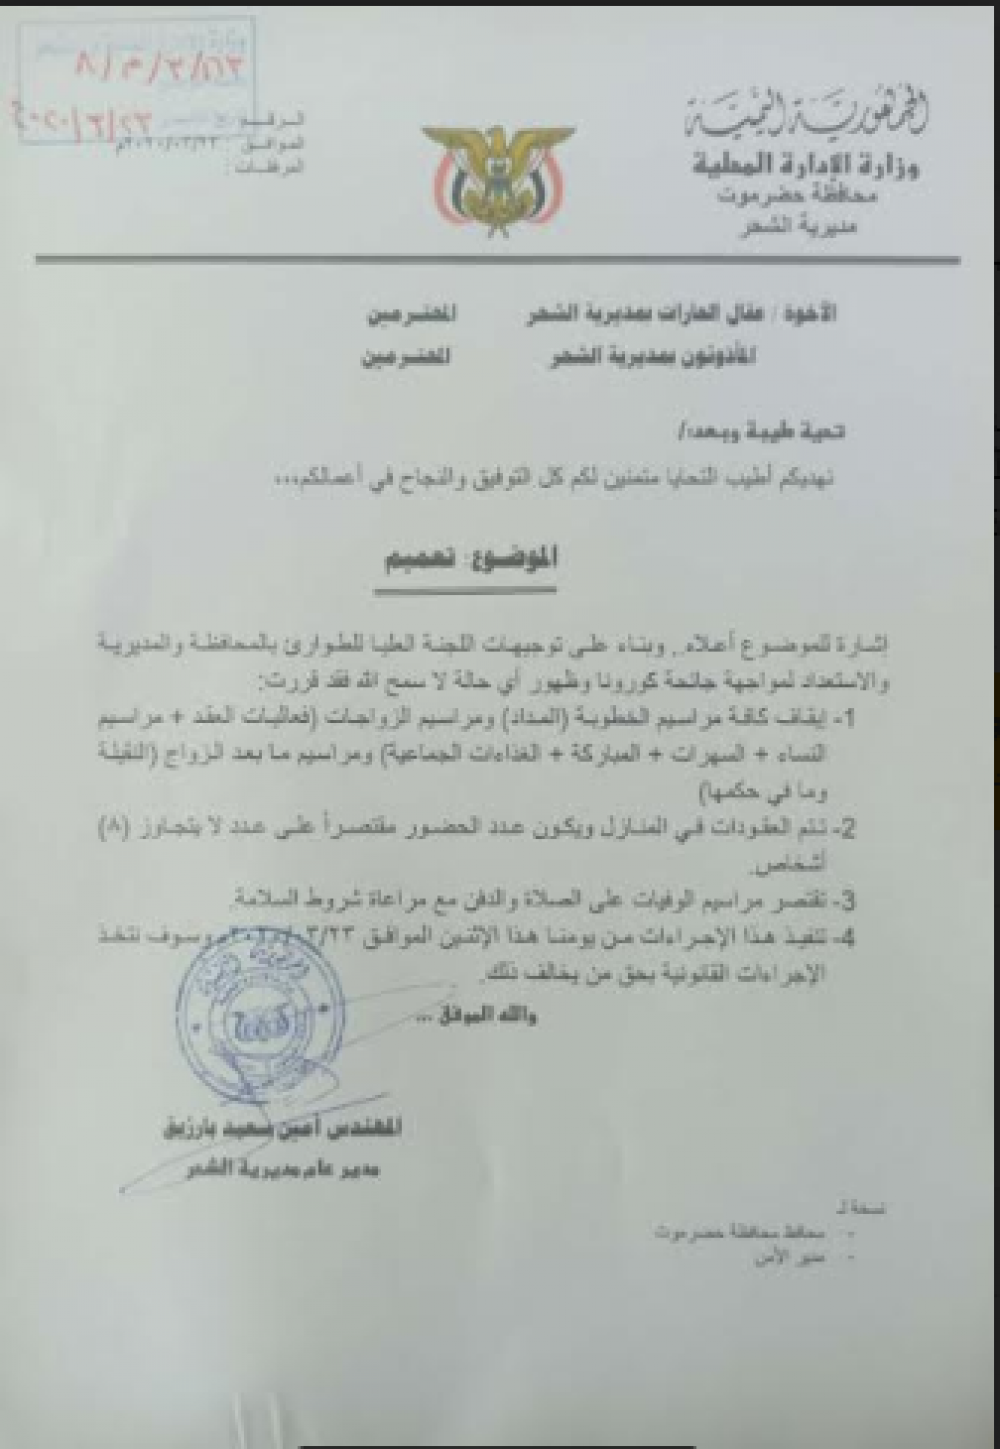 محافظة يمنية تمنع جميع مراسيم الخطوبة والزواج وتصدر هذا التعميم (وثيقة)